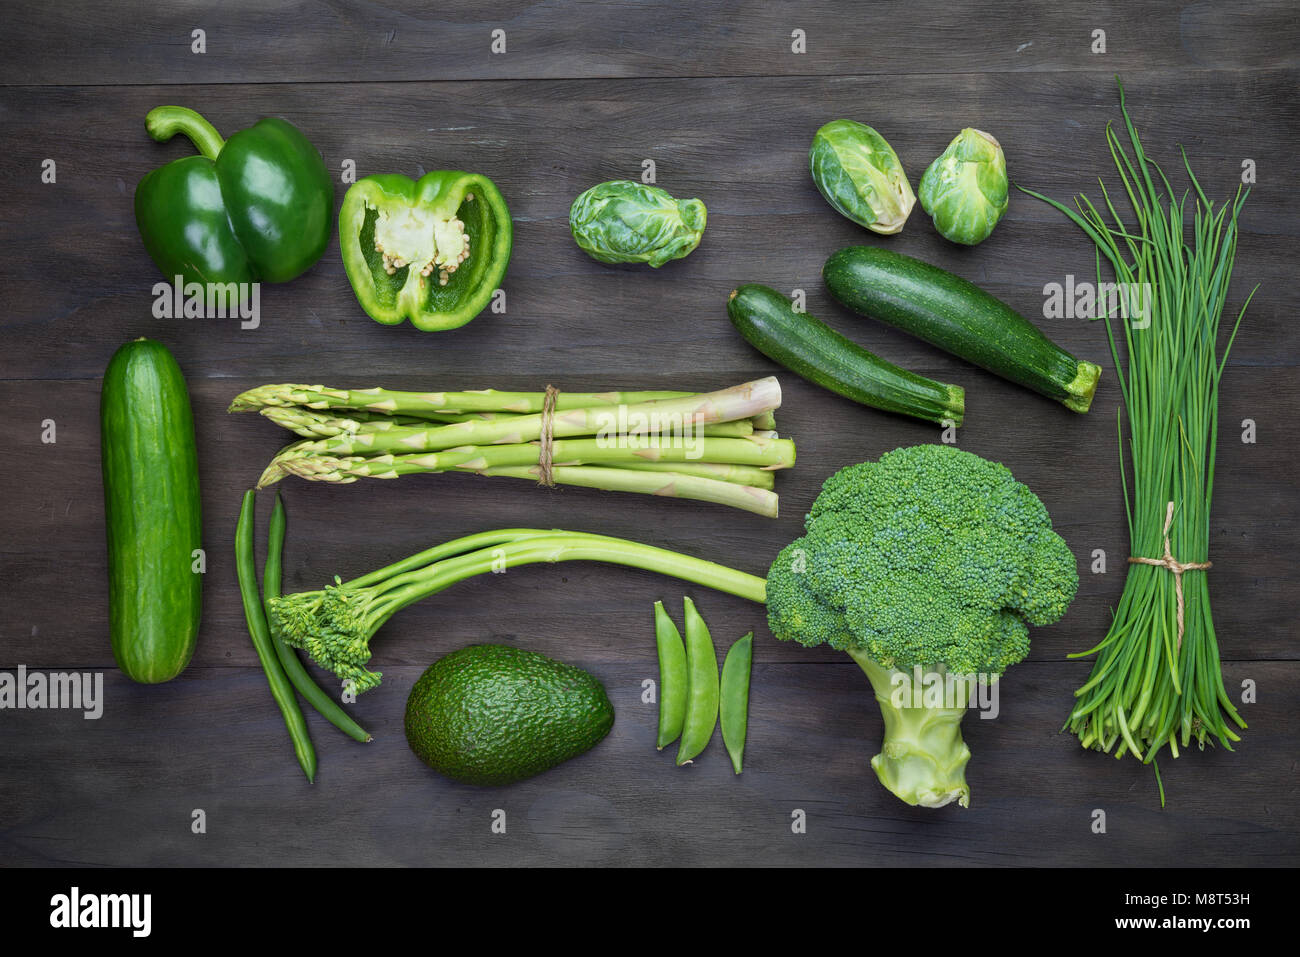 Frisches Grün Bio Gemüse auf schwarzem Holz- vintage table.Organic Gemüse Top View Stockfoto